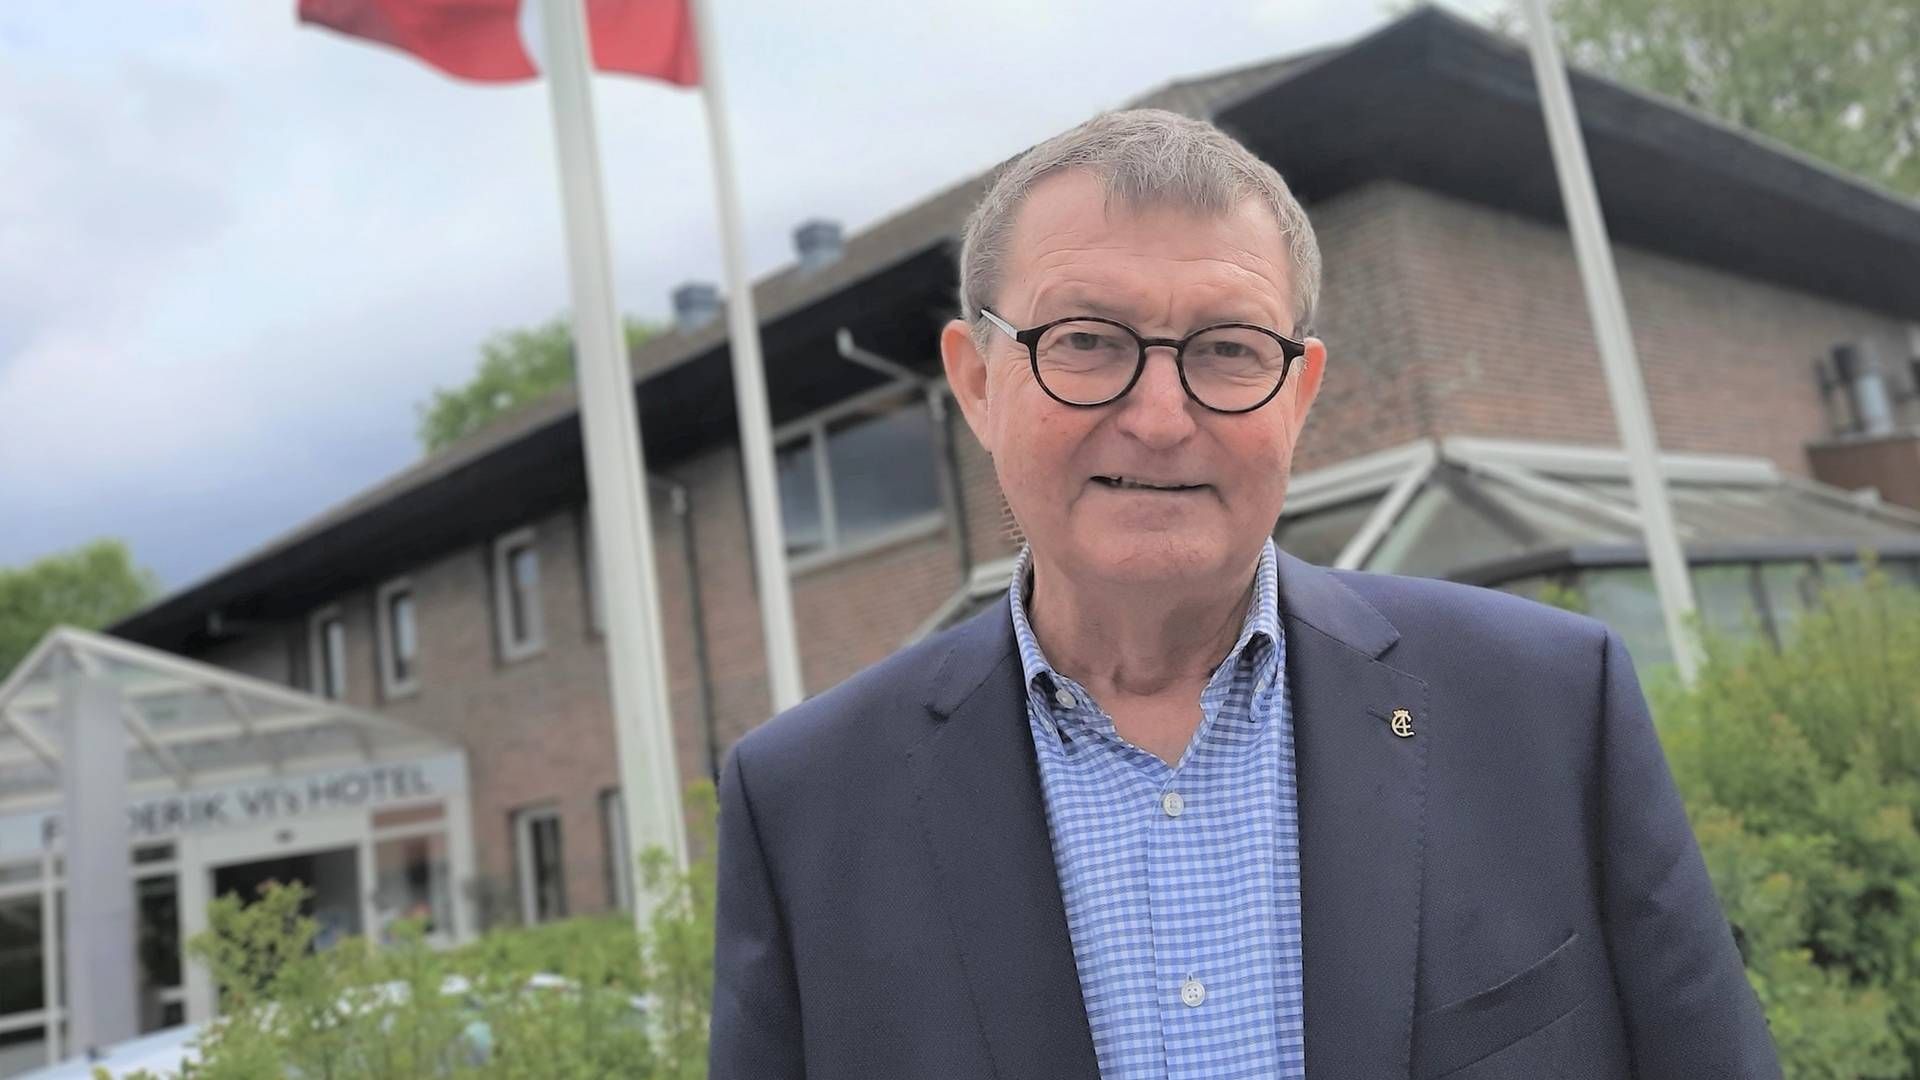 Jens-Peter Riis Jensen nævner dåbsattesten som en årsag til, at han stopper som bestyrelsesformand i GF Forsikring. Han blev valgt til posten i maj 2021. | Foto: PR/GF Forsikring